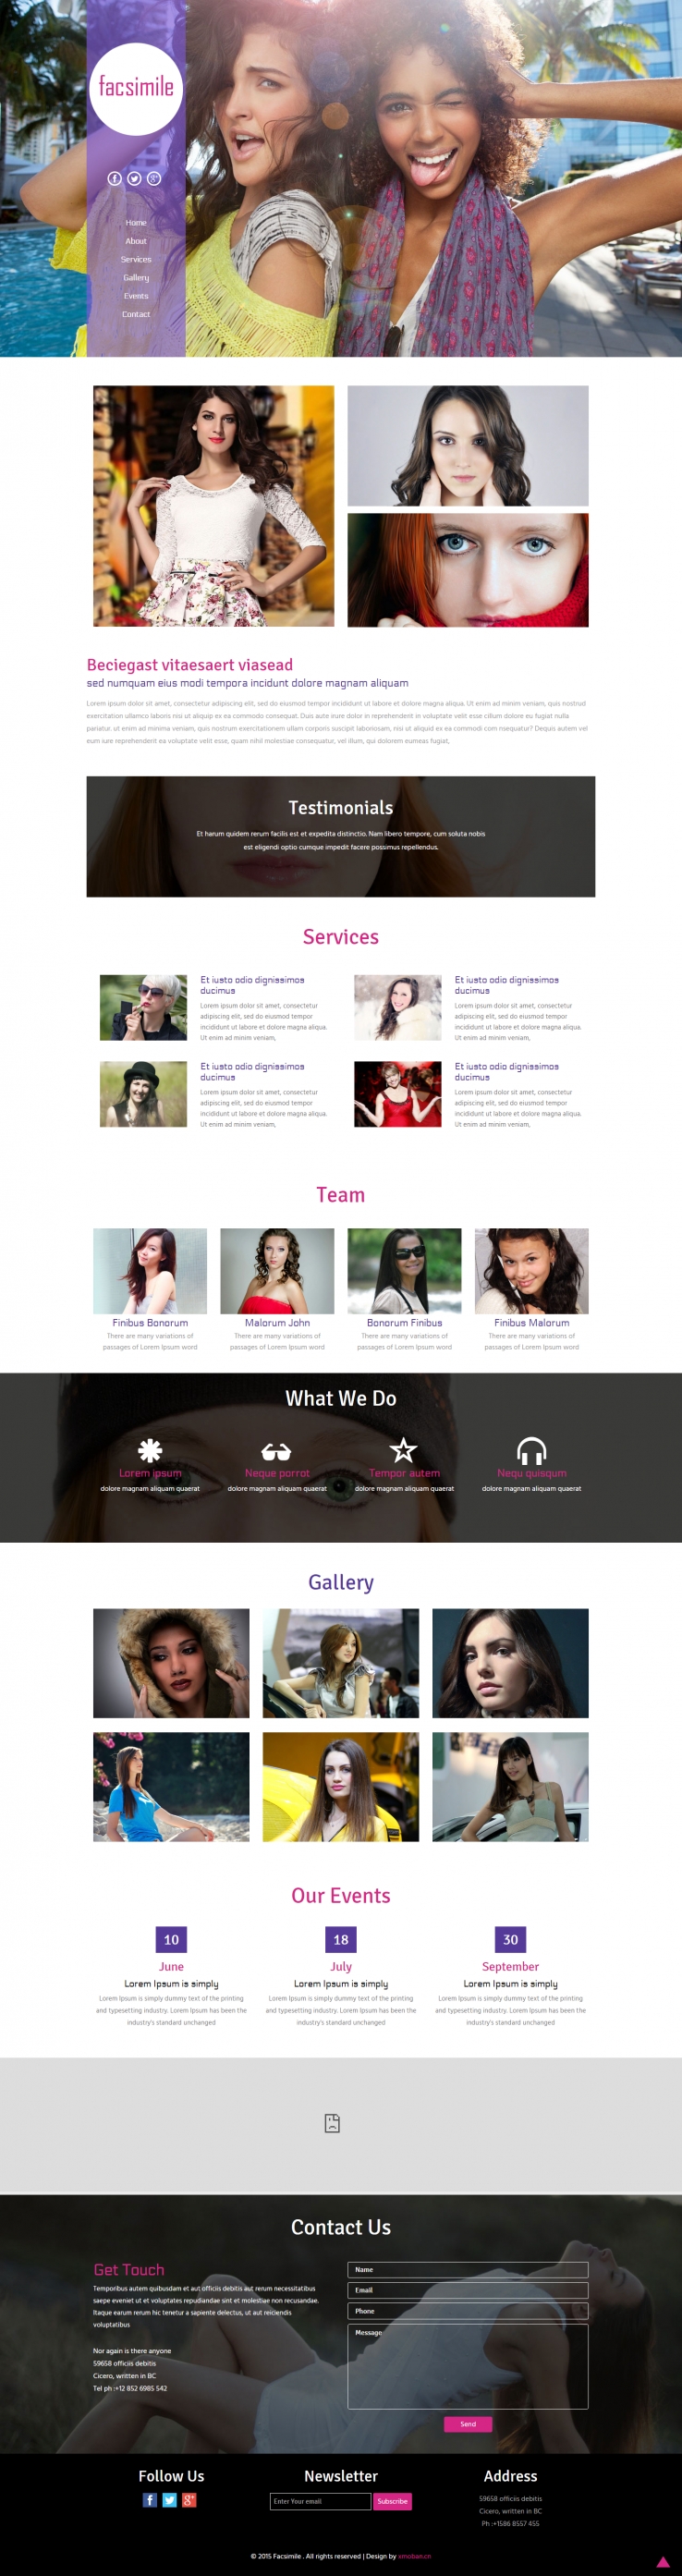 紫色欧美风格的时尚活动策划企业网站源码下载